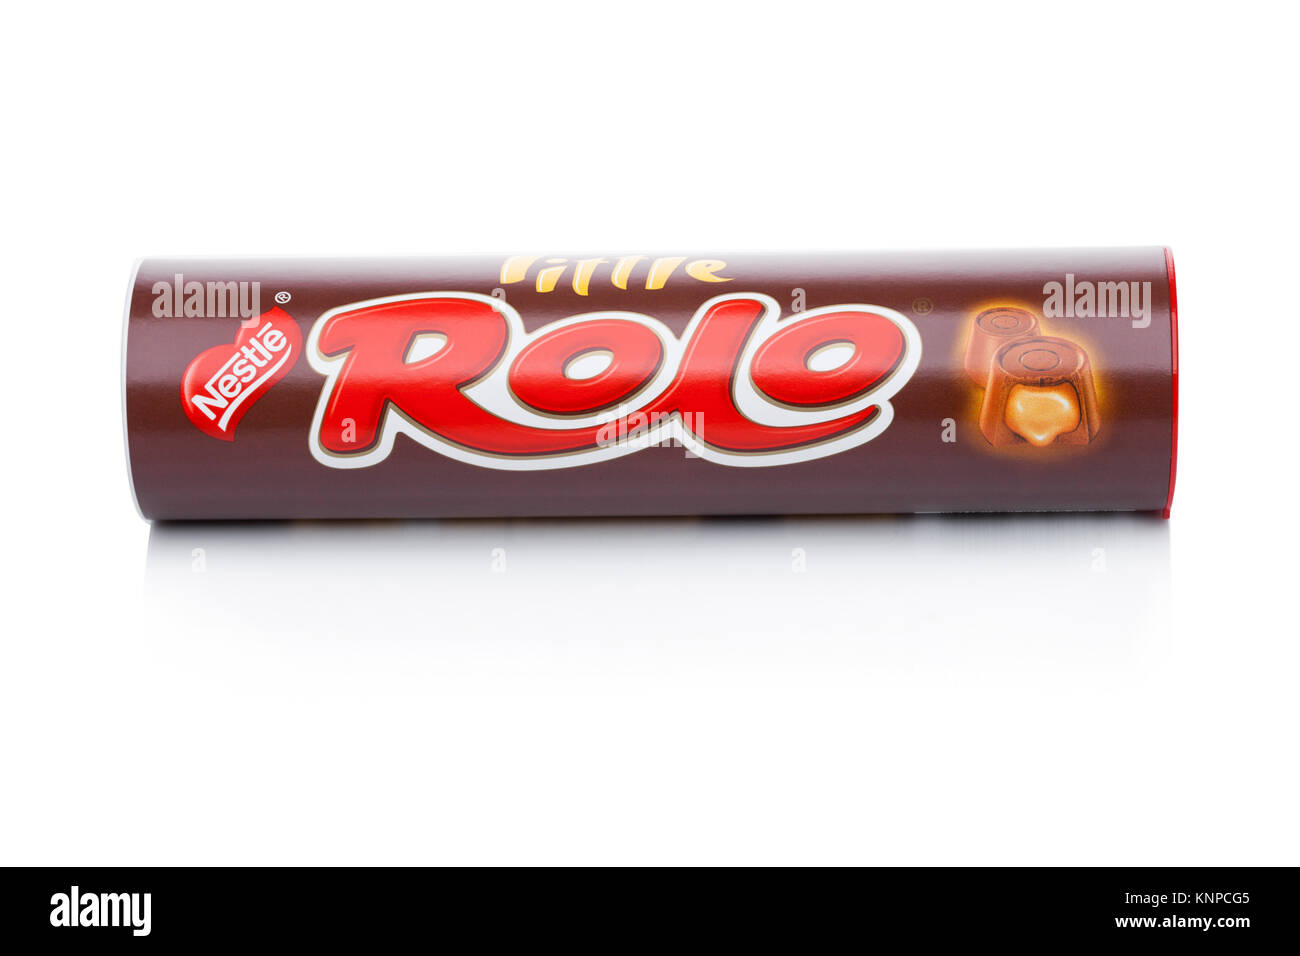 LONDON, Großbritannien - 07 Dezember, 2017: Rolo candy in der Tube auf weißem Hintergrund. Rolo produziert wird von Nestle, Schweizer multinationale Unternehmen spezialisiert auf Lebensmittel ein Stockfoto